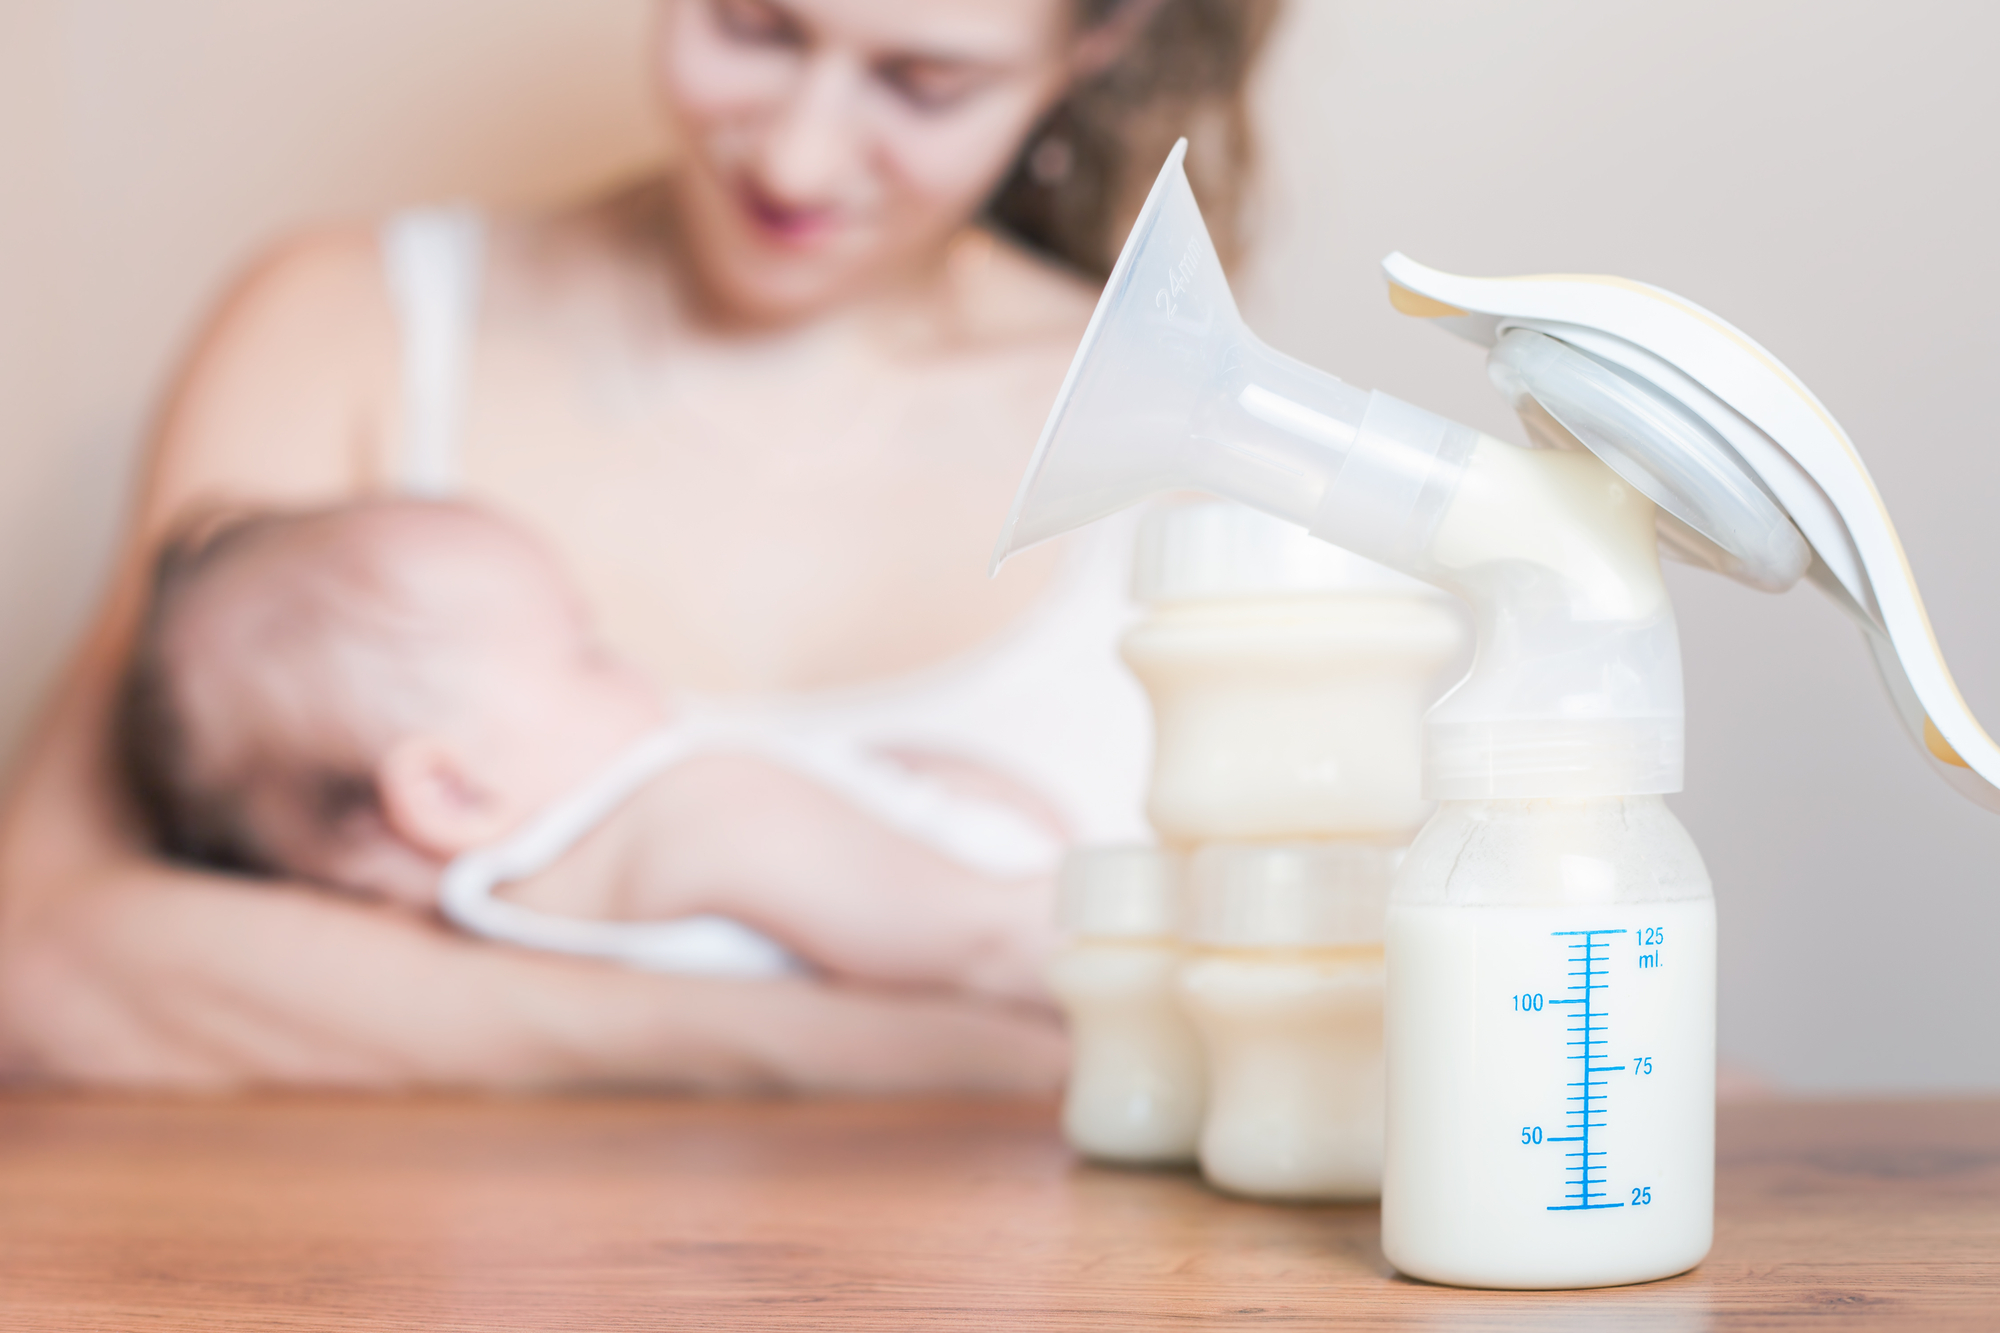 美国疾控中心的母乳喂养指南建议